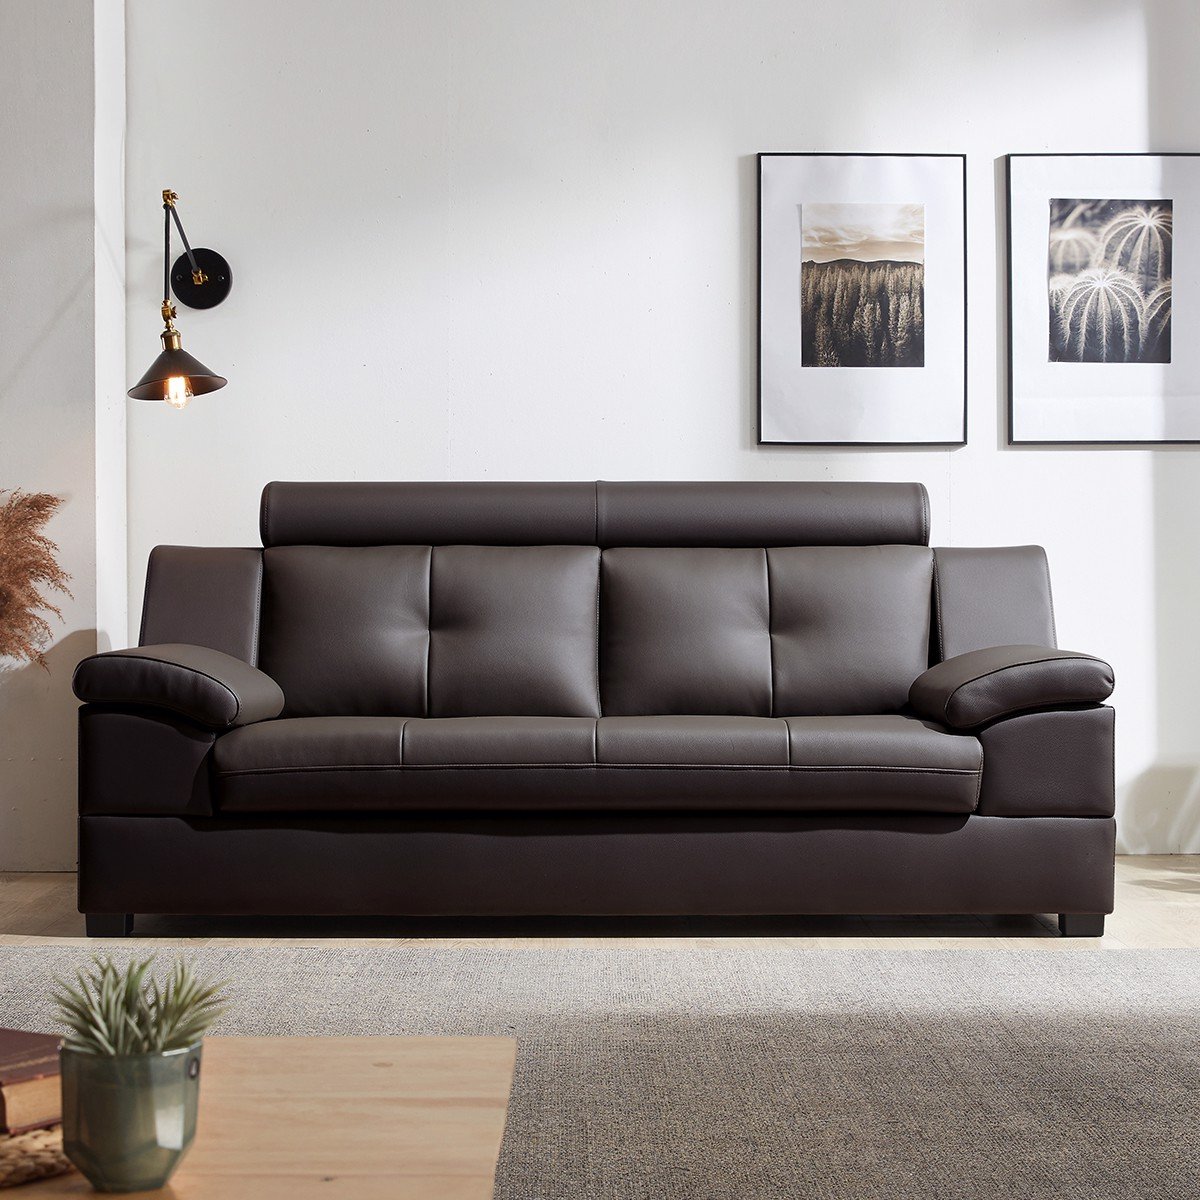 Tổng hợp câu hỏi và giải đáp về bọc lại ghế sofa mà khách hàng thường thắc mắc